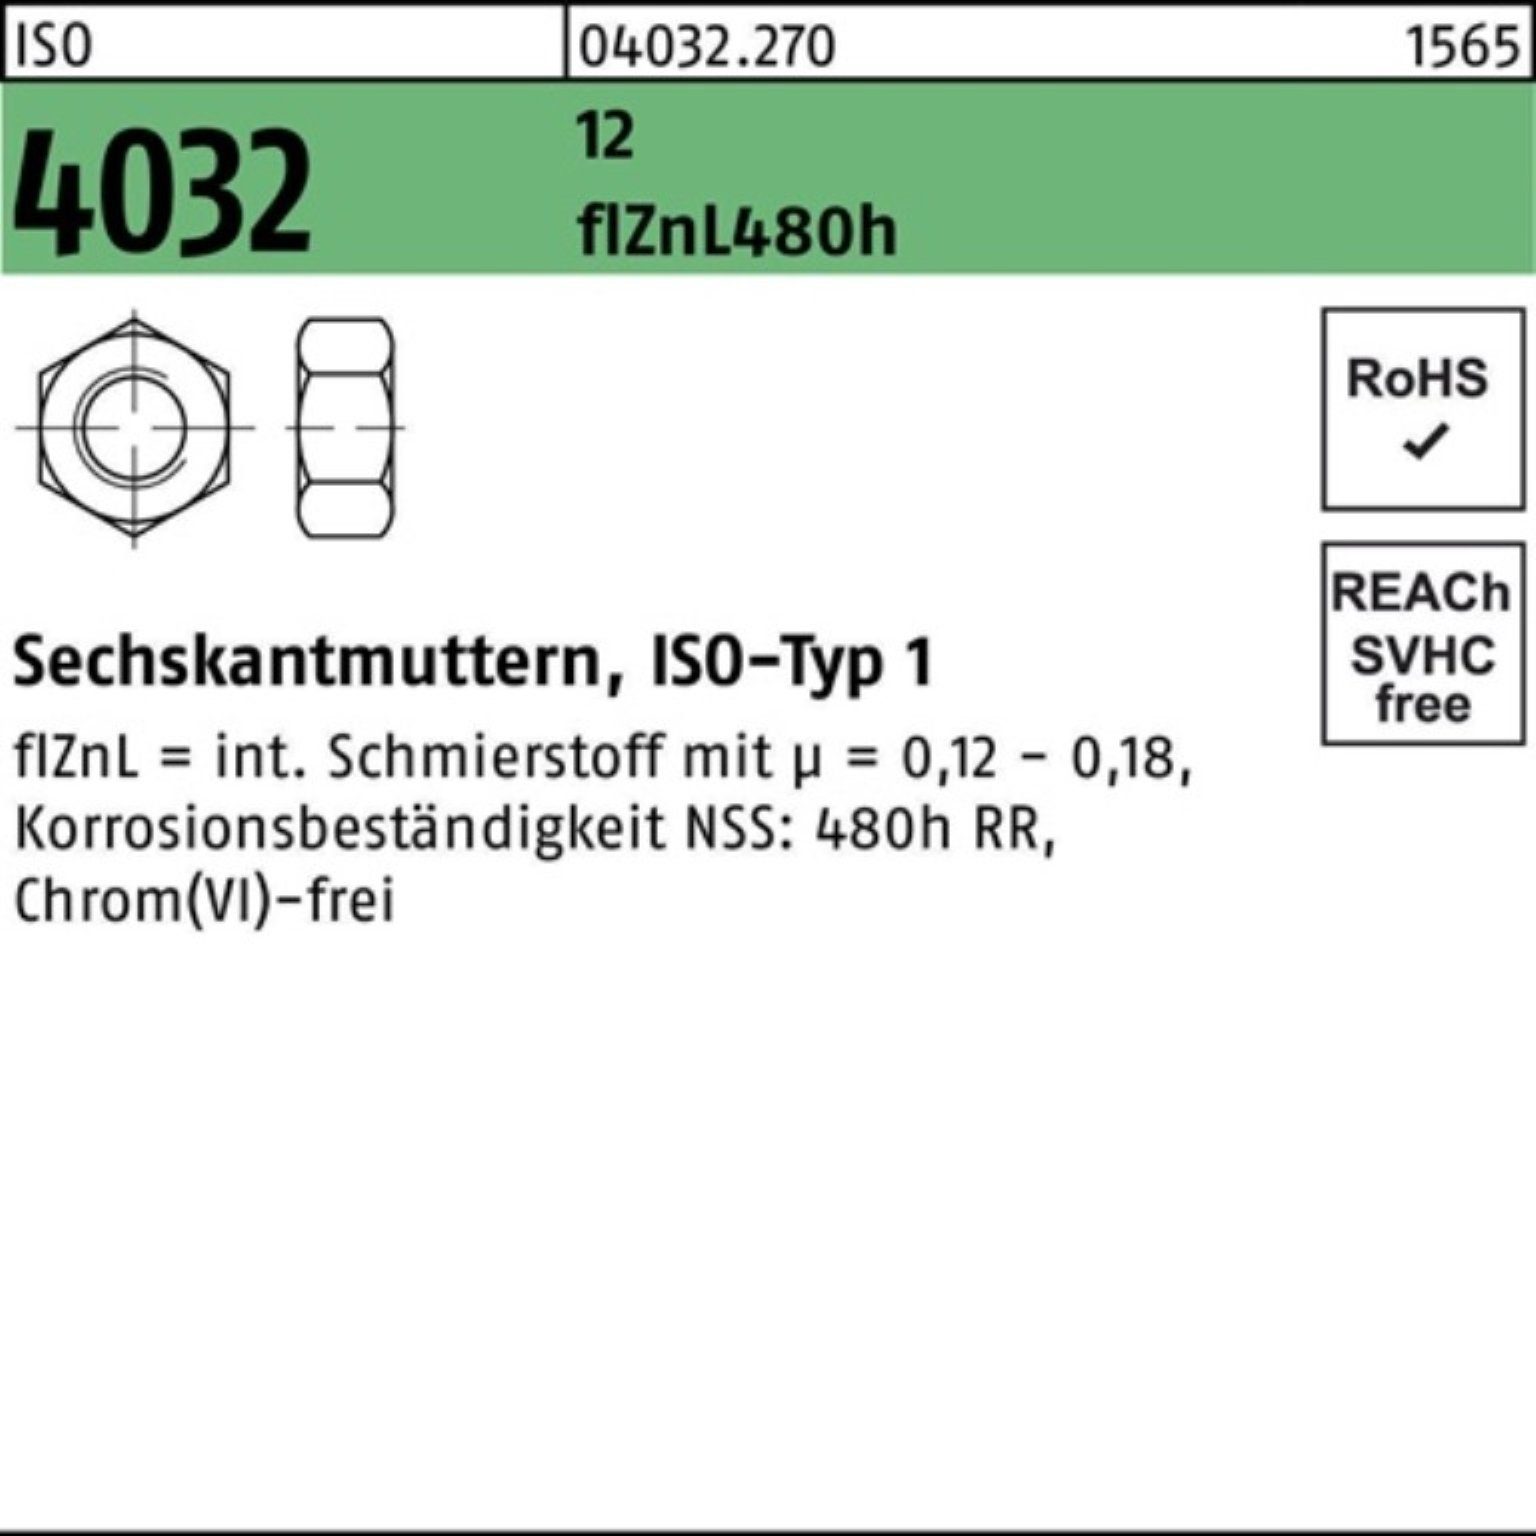 12 4032 ISO M8 10 zinklamellenb. 480h Sechskantmutter Bufab Pack flZnL 100er Muttern